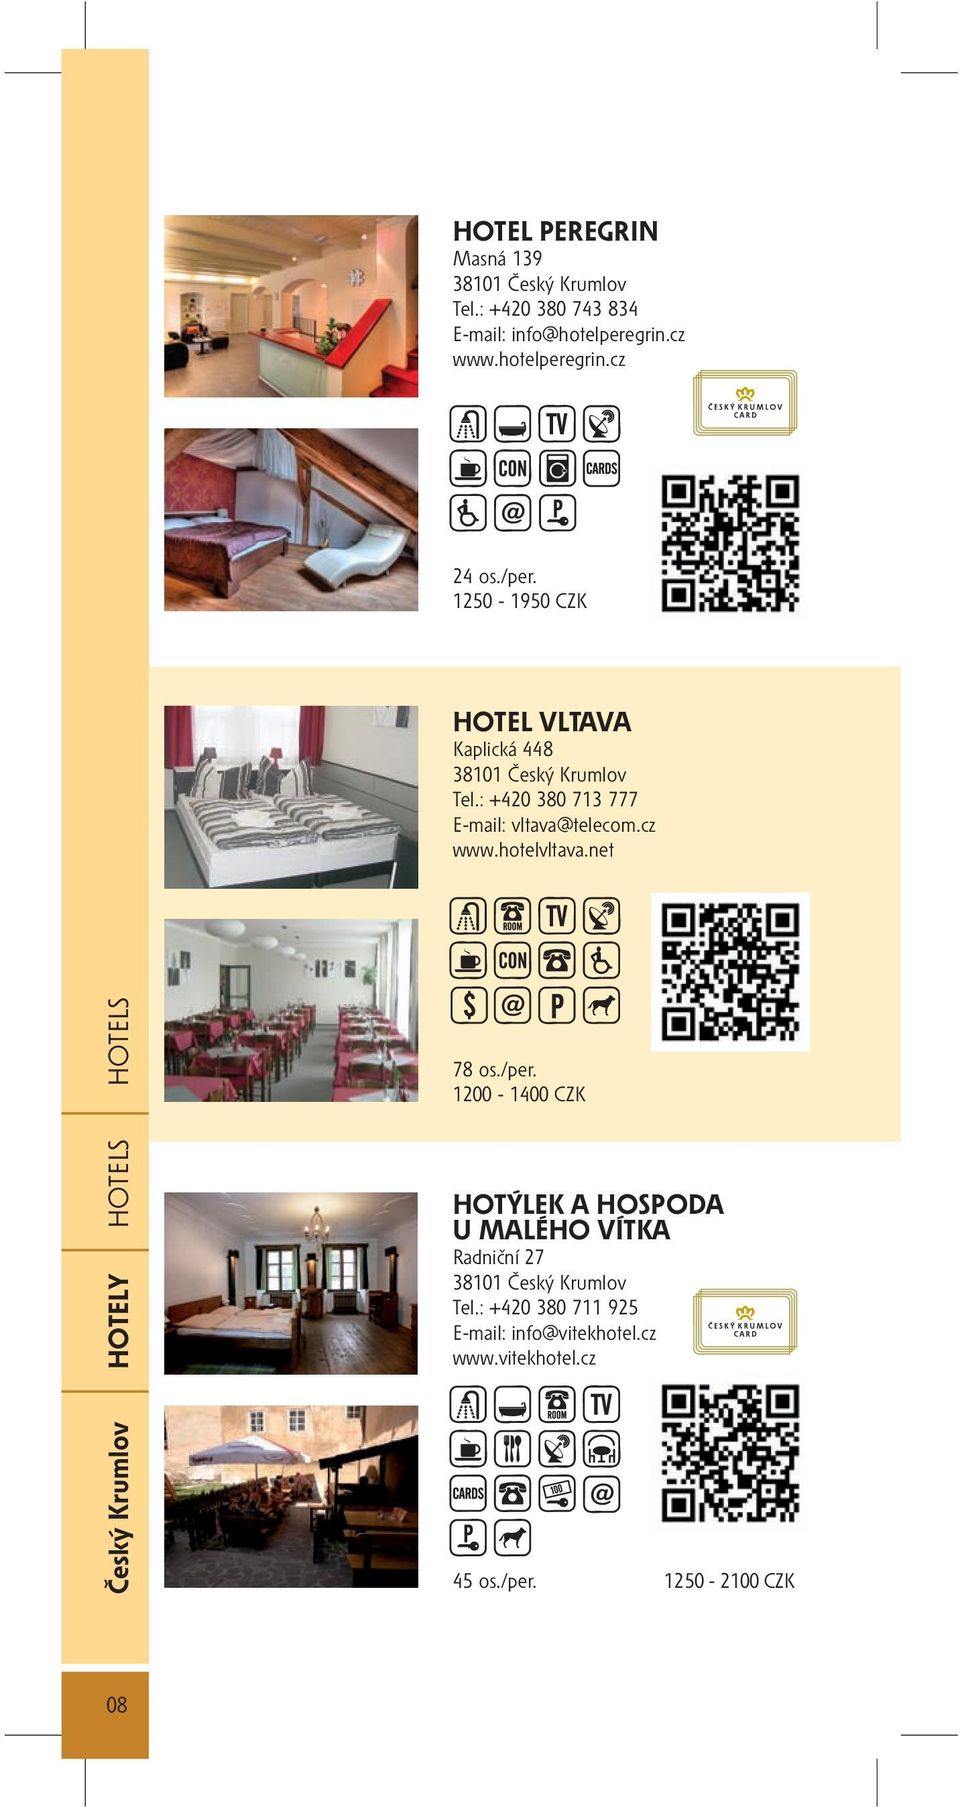 hotelvltava.net Český Krumlov HOTELY HOTELS HOTELS 78 os./per.